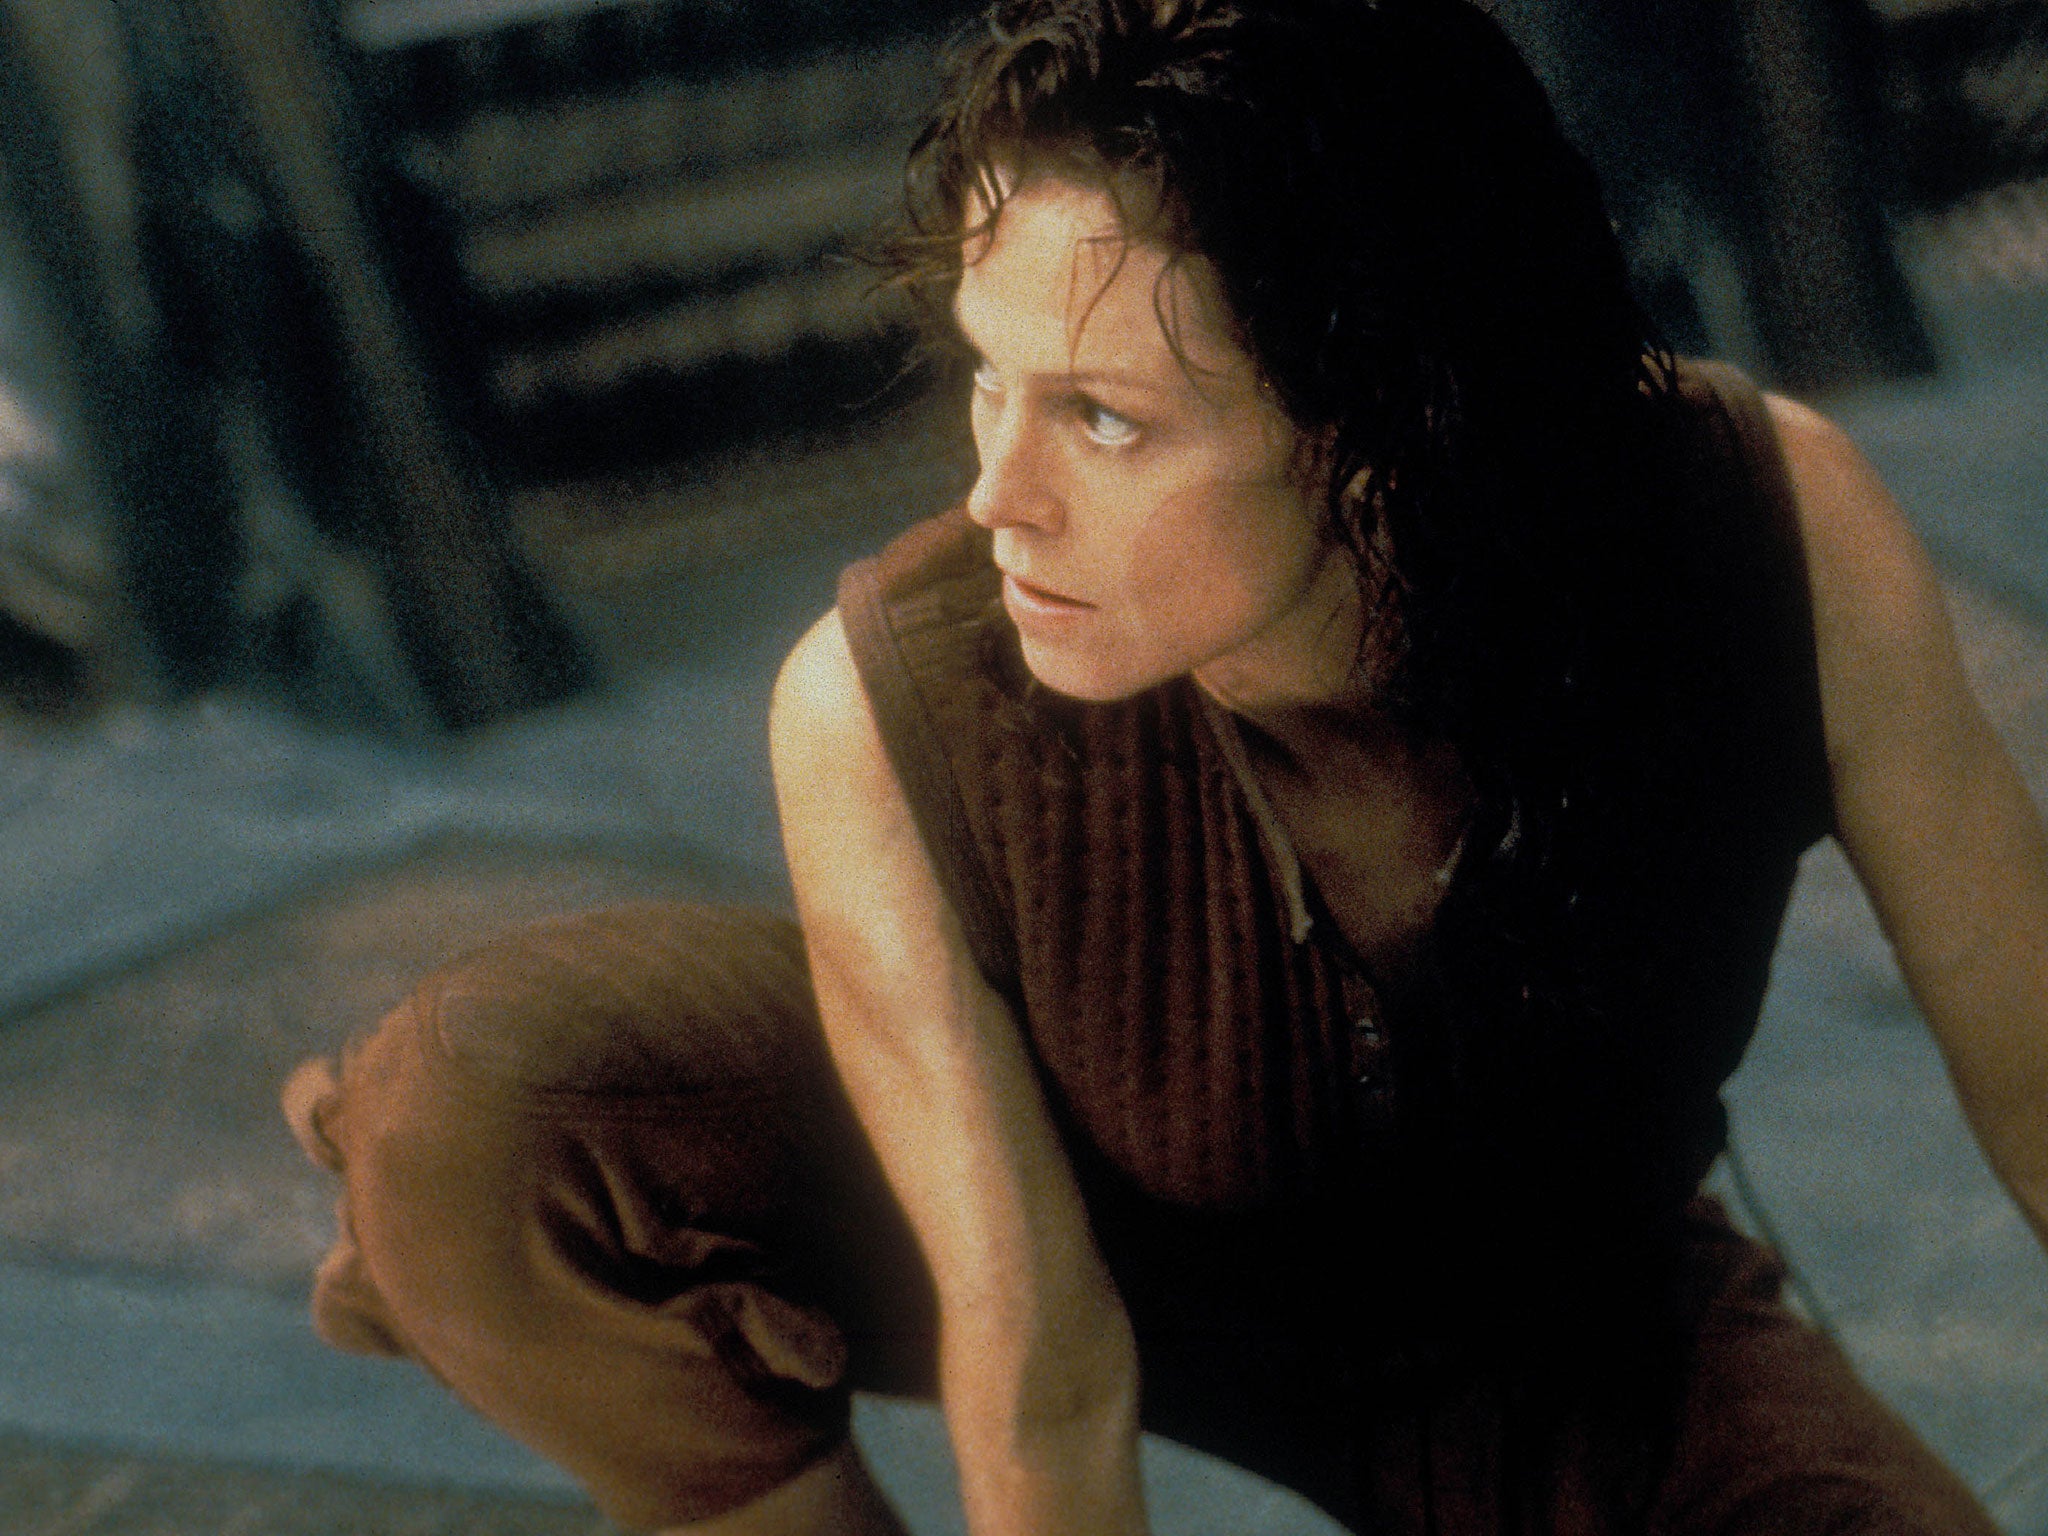 Sigourney Weaver as Ellen Ripley in Alien: Resurrection